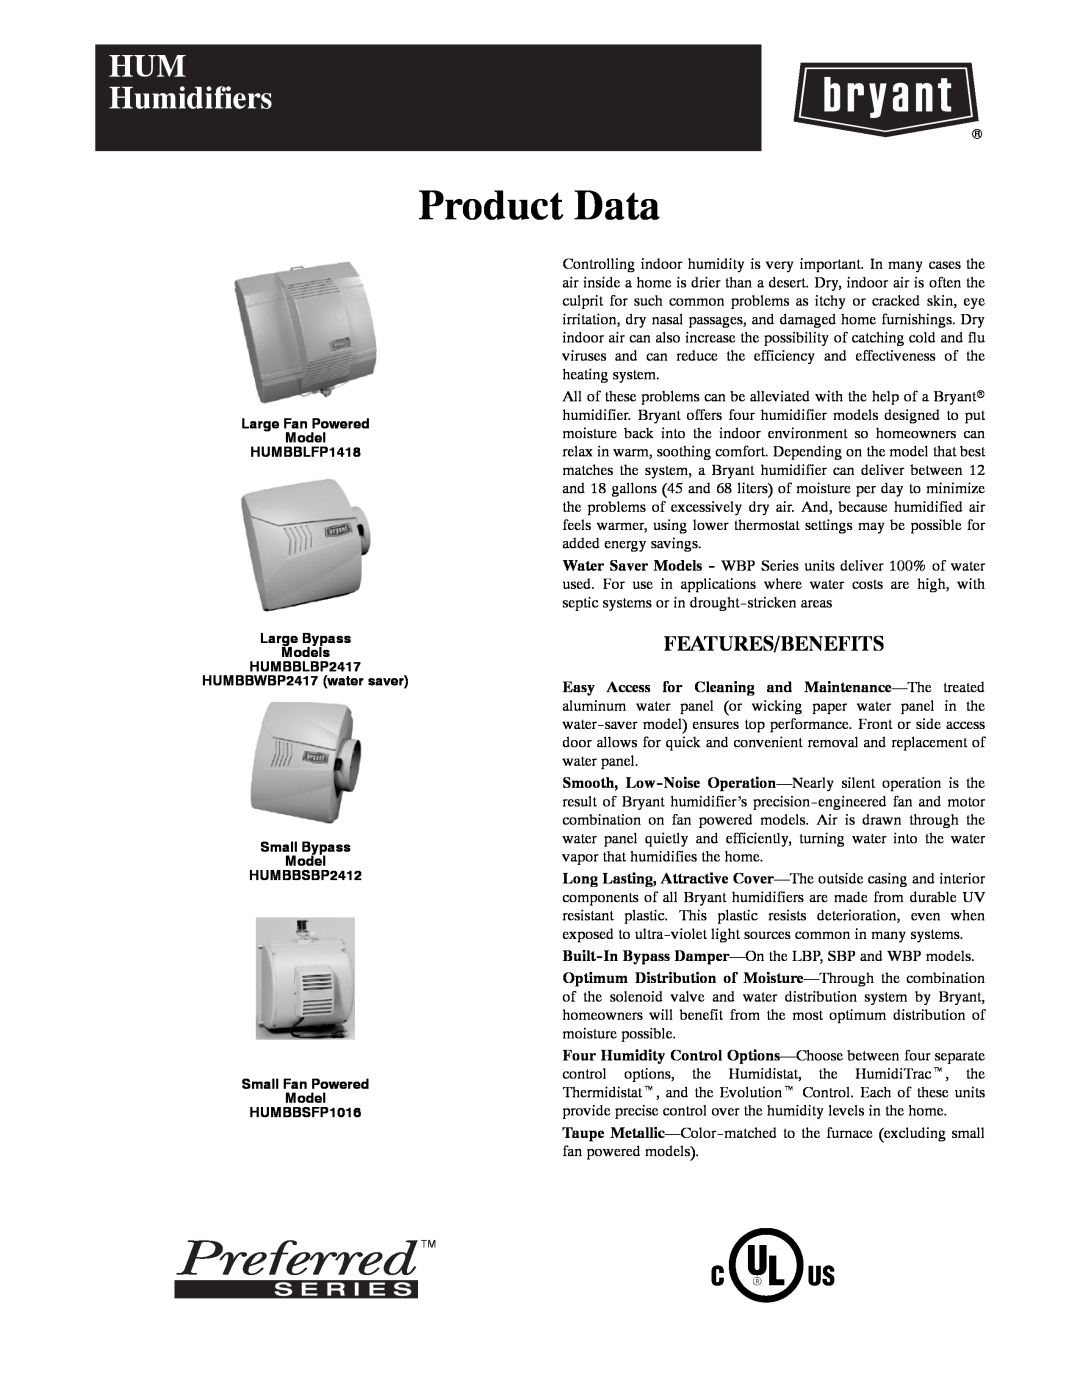 Bryant HUMBBLBP2417, HUMBBWBP2417, HUMBBSBP2412, HUMBBLFP1418 manual Product Data, HUM Humidifiers 